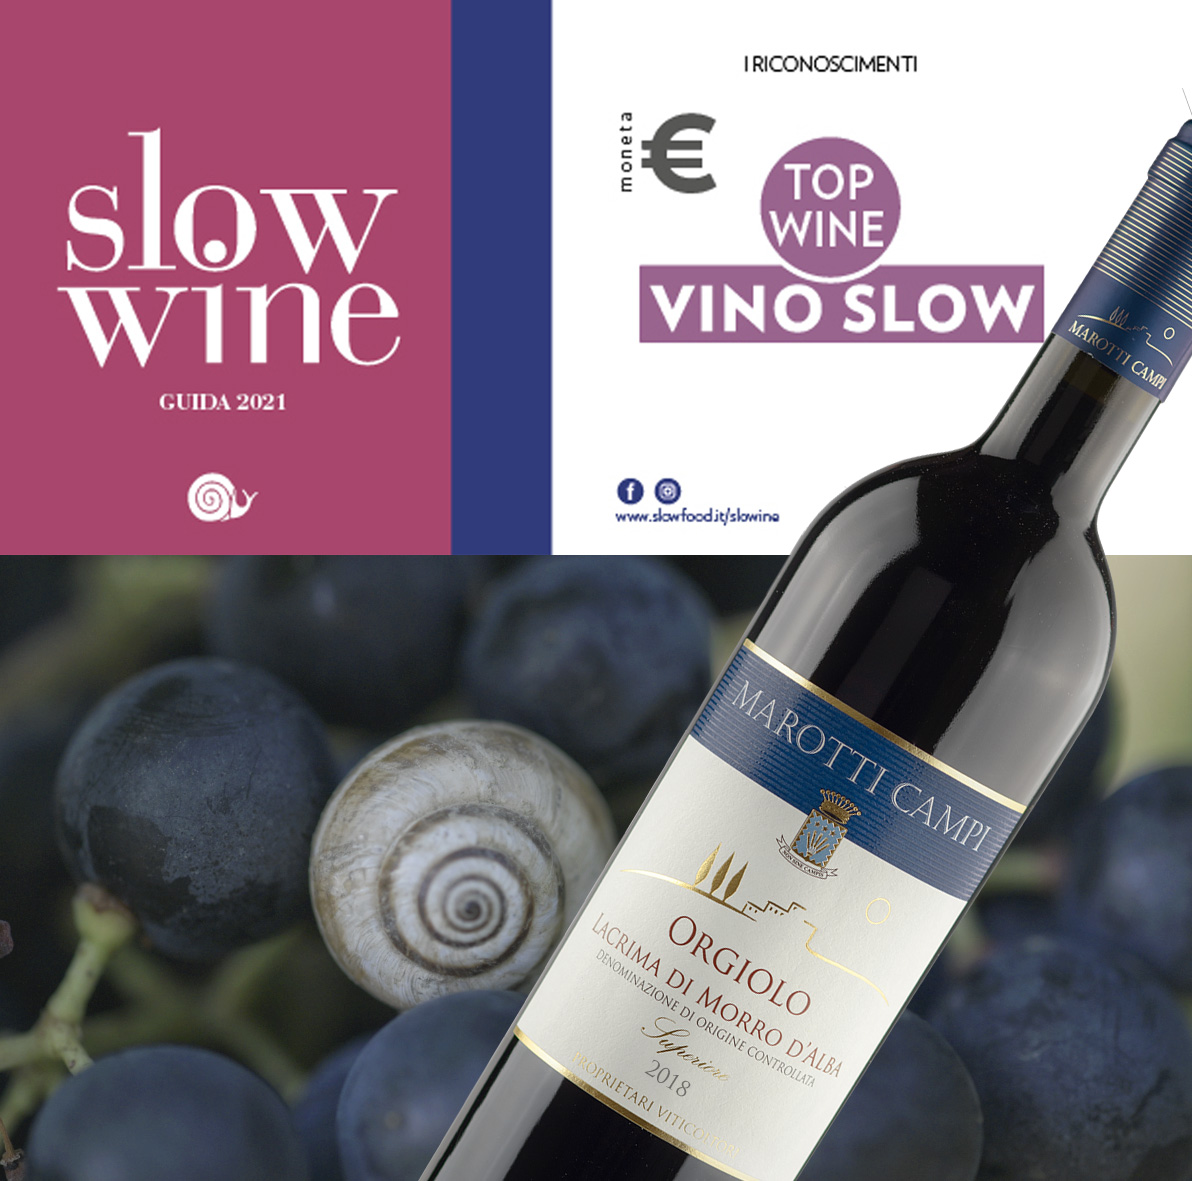 Slow Wine Guide 2021 Orgiolo Lacrima di Morro d'Alba DOC Superiore 18 Vino Slow